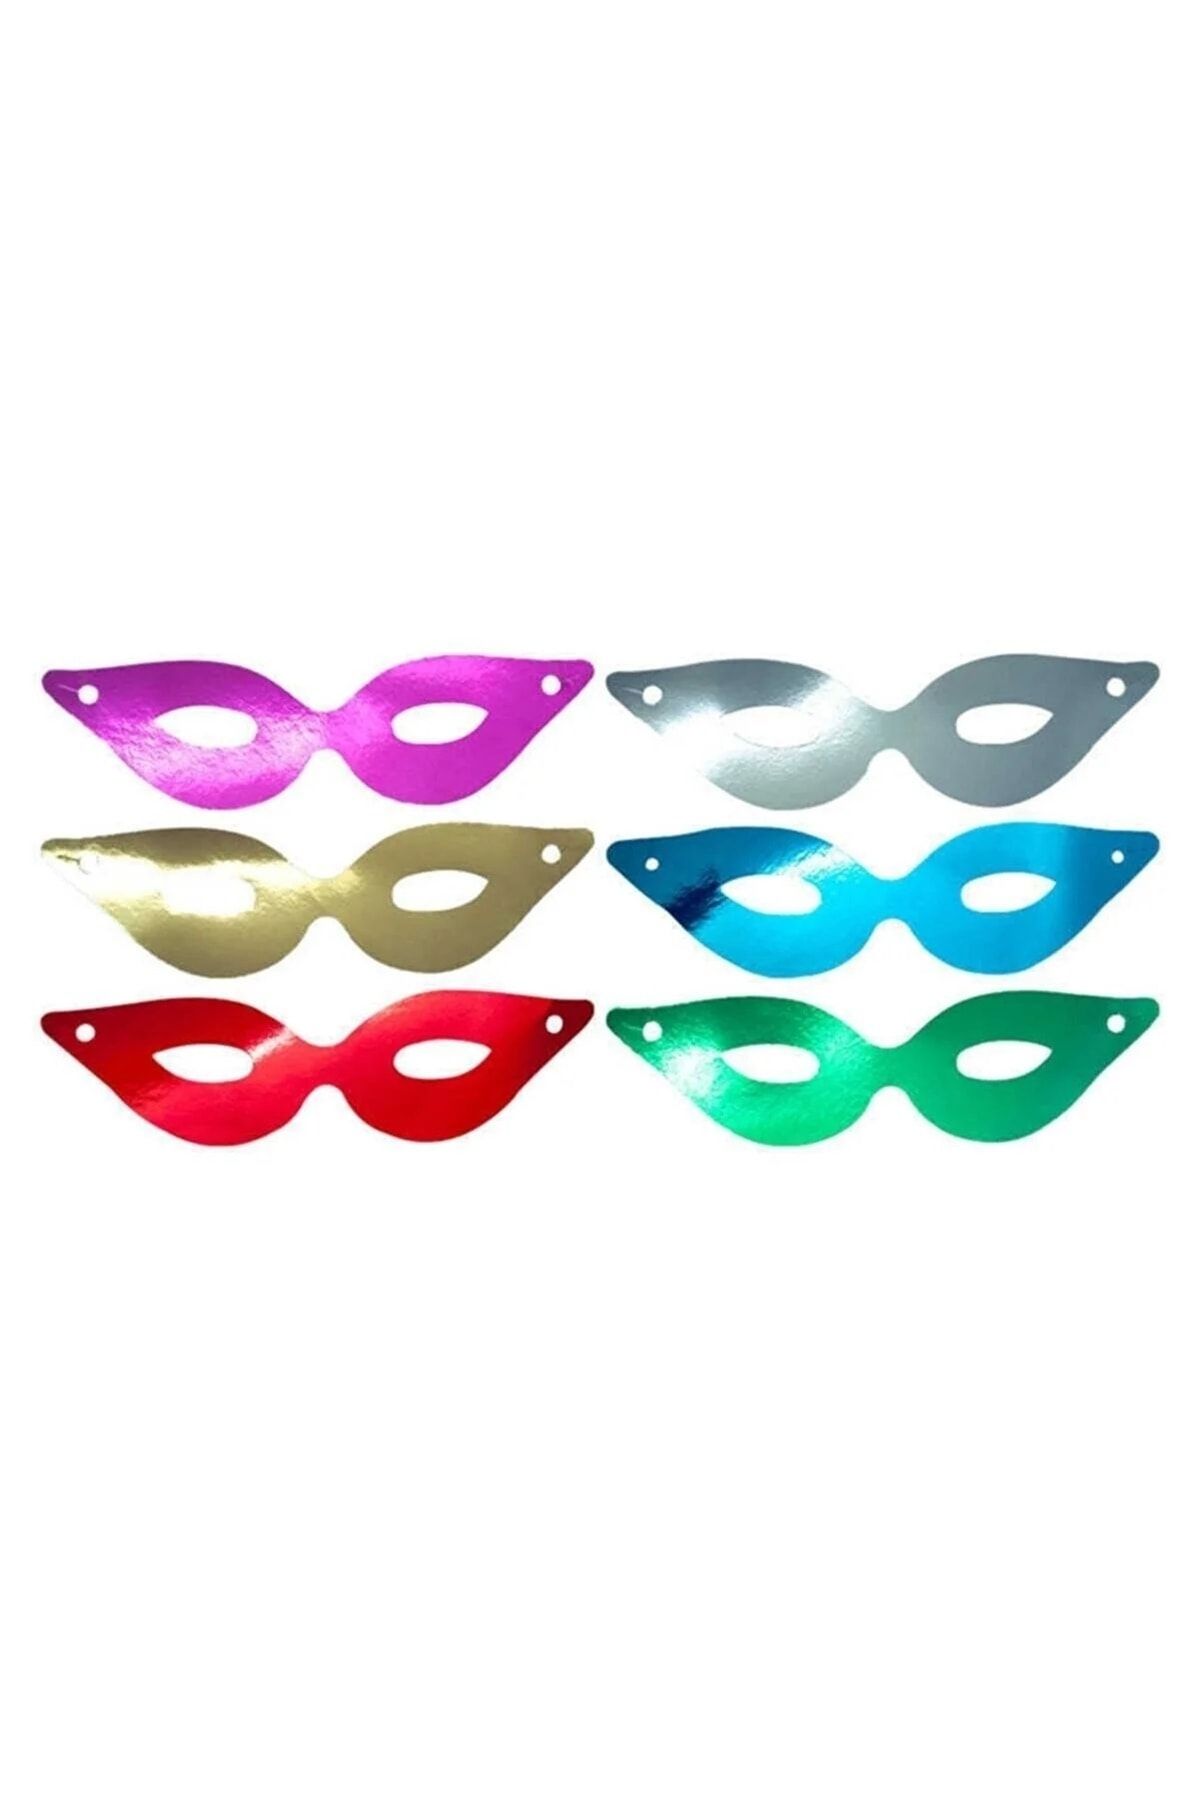 2 Adet Renkli Yılbaşı Şapkası Parti Maske Ve Düdük Seti Kağıt Üçgen Katyon Set Kaynana Dili Düdüğü_5